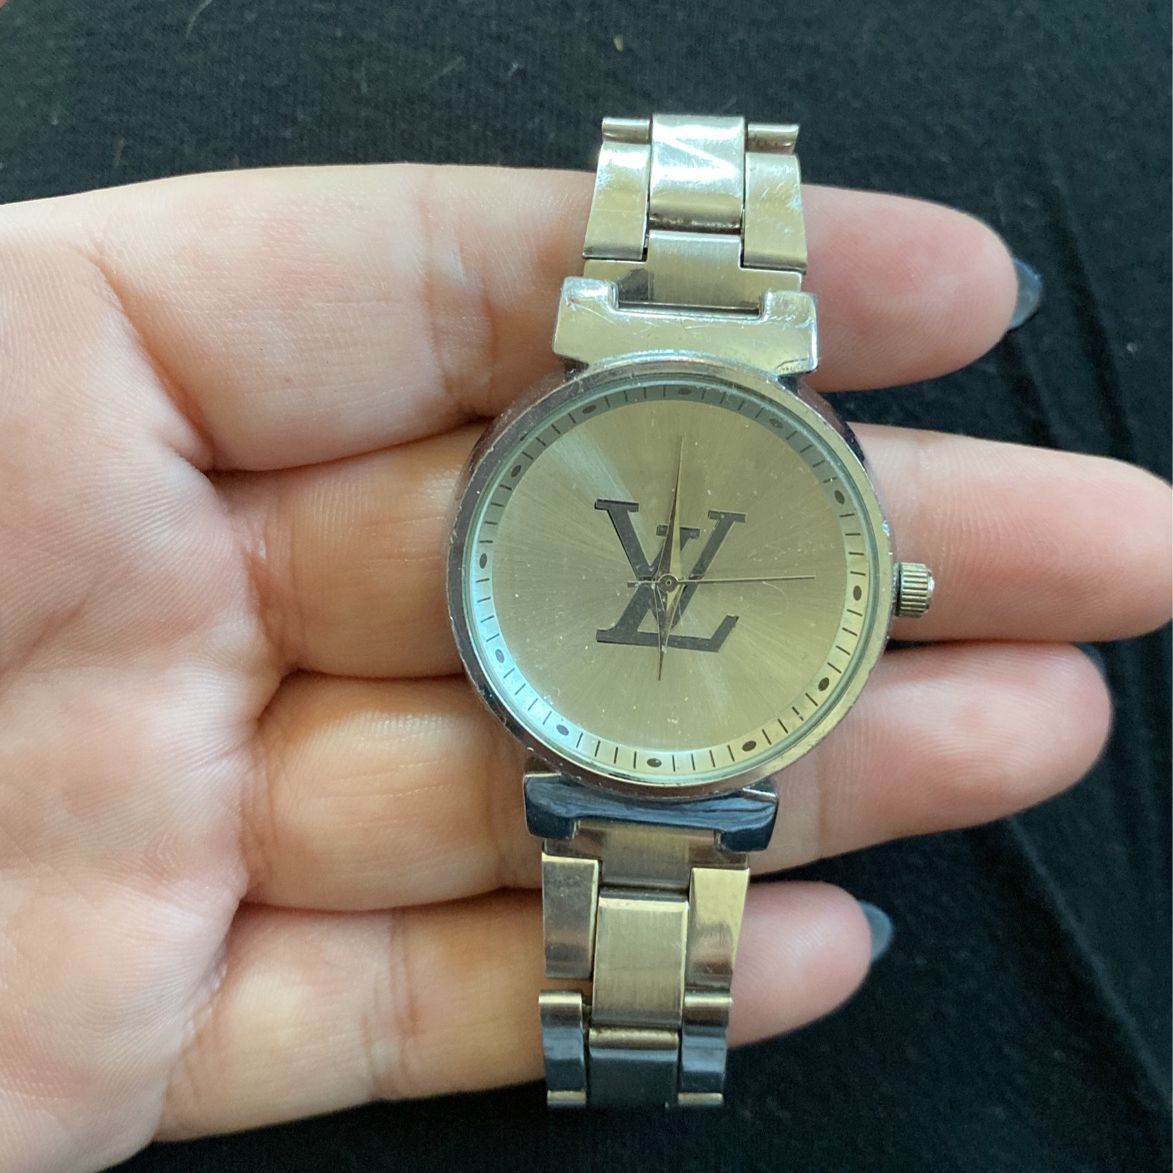 Loui Vuitton Watch for Sale in Hoboken, NJ - OfferUp